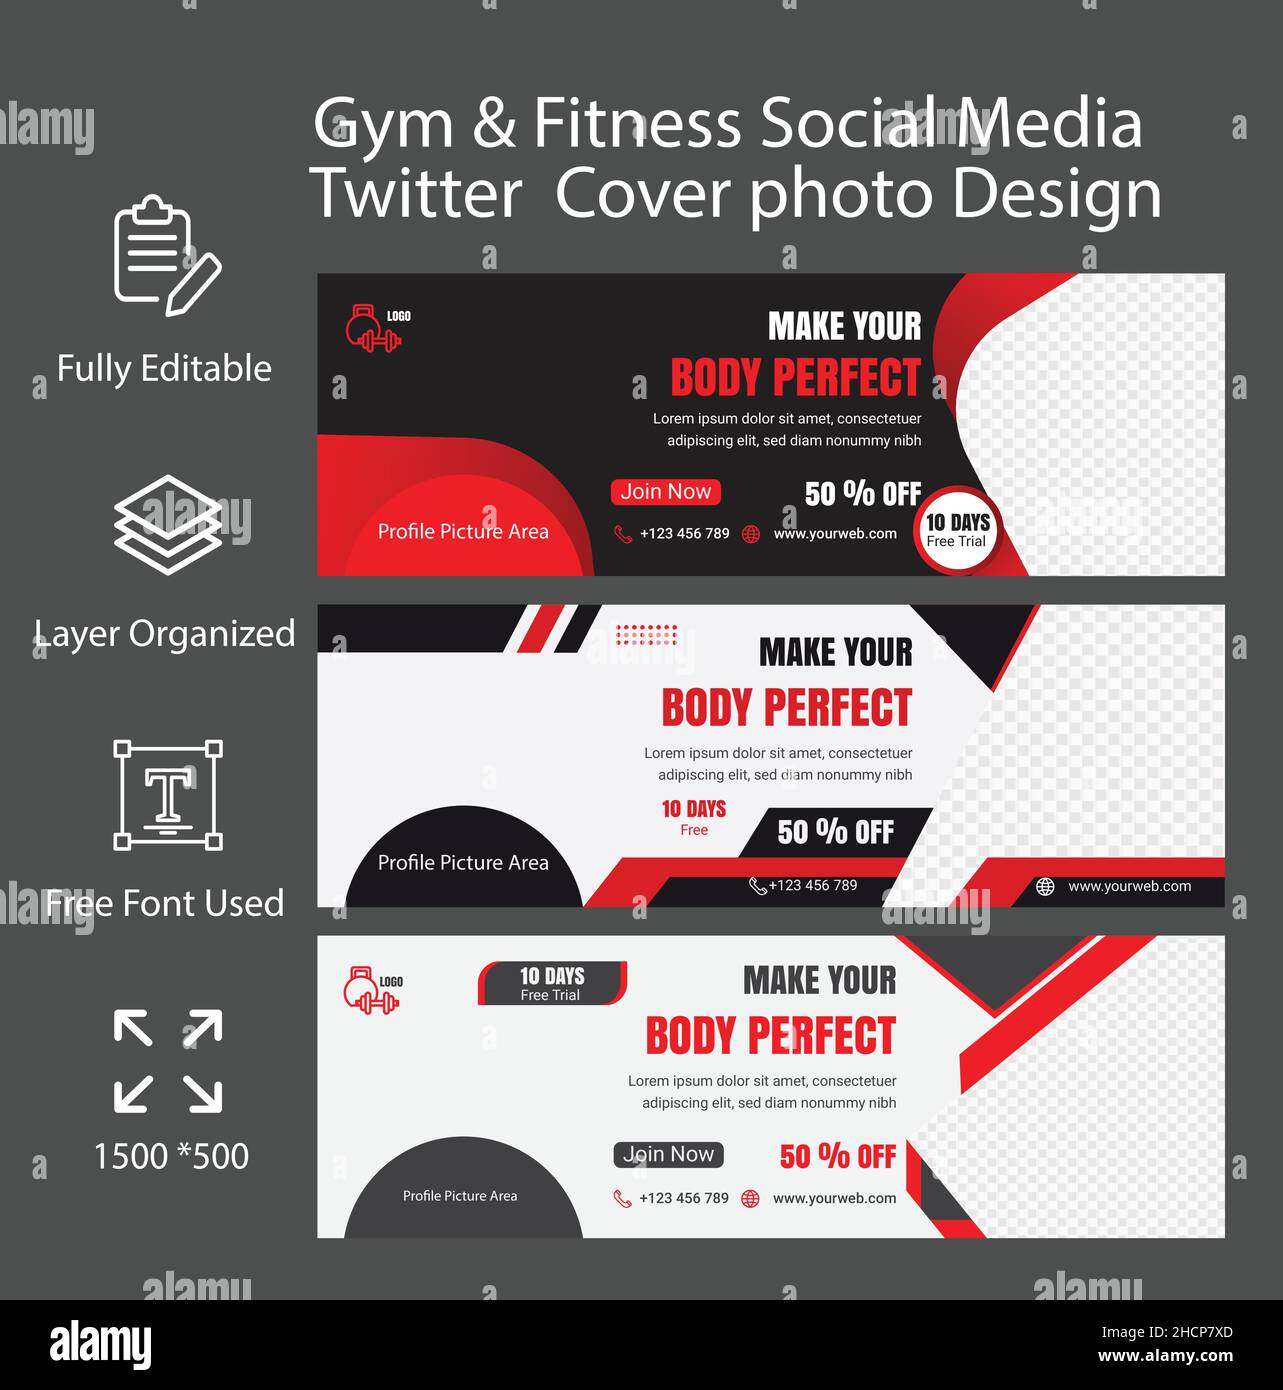 Fitness & Gym Social Media Twitter Cover or Header Banner Template Design Stock Vector